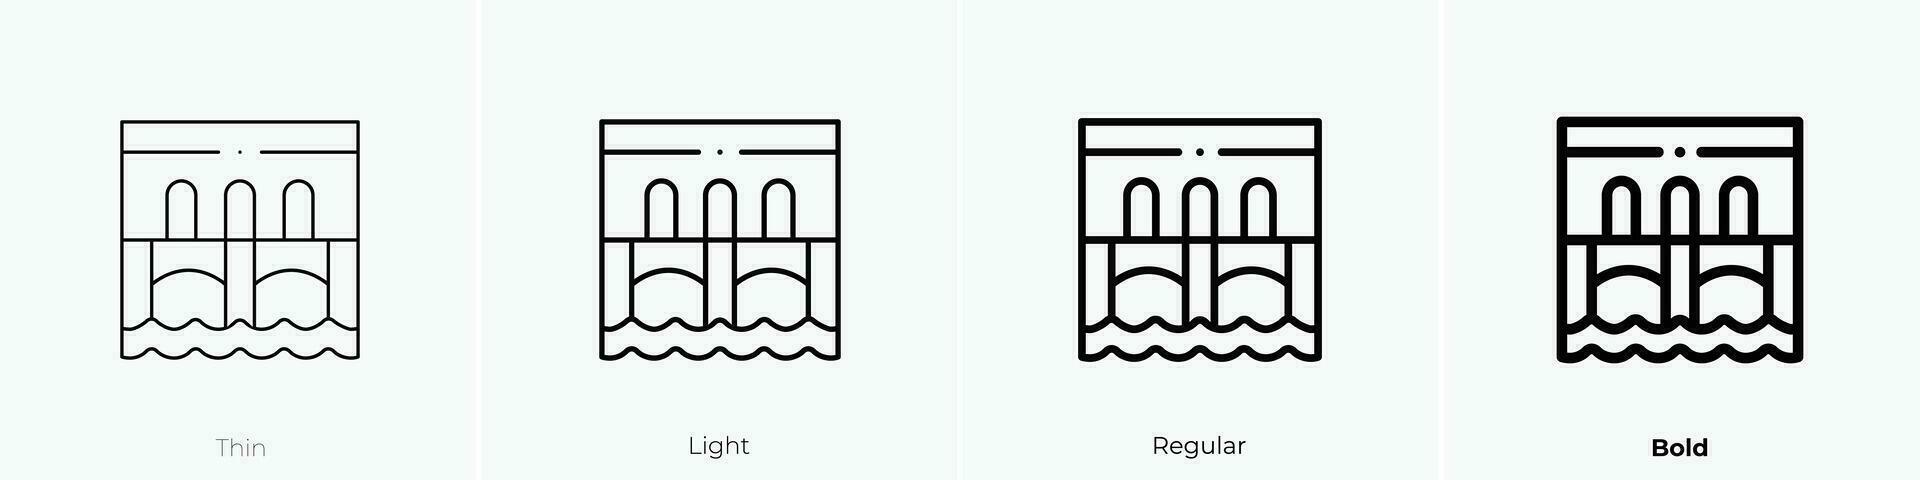 ponte Vecchio Symbol. dünn, Licht, regulär und Fett gedruckt Stil Design isoliert auf Weiß Hintergrund vektor